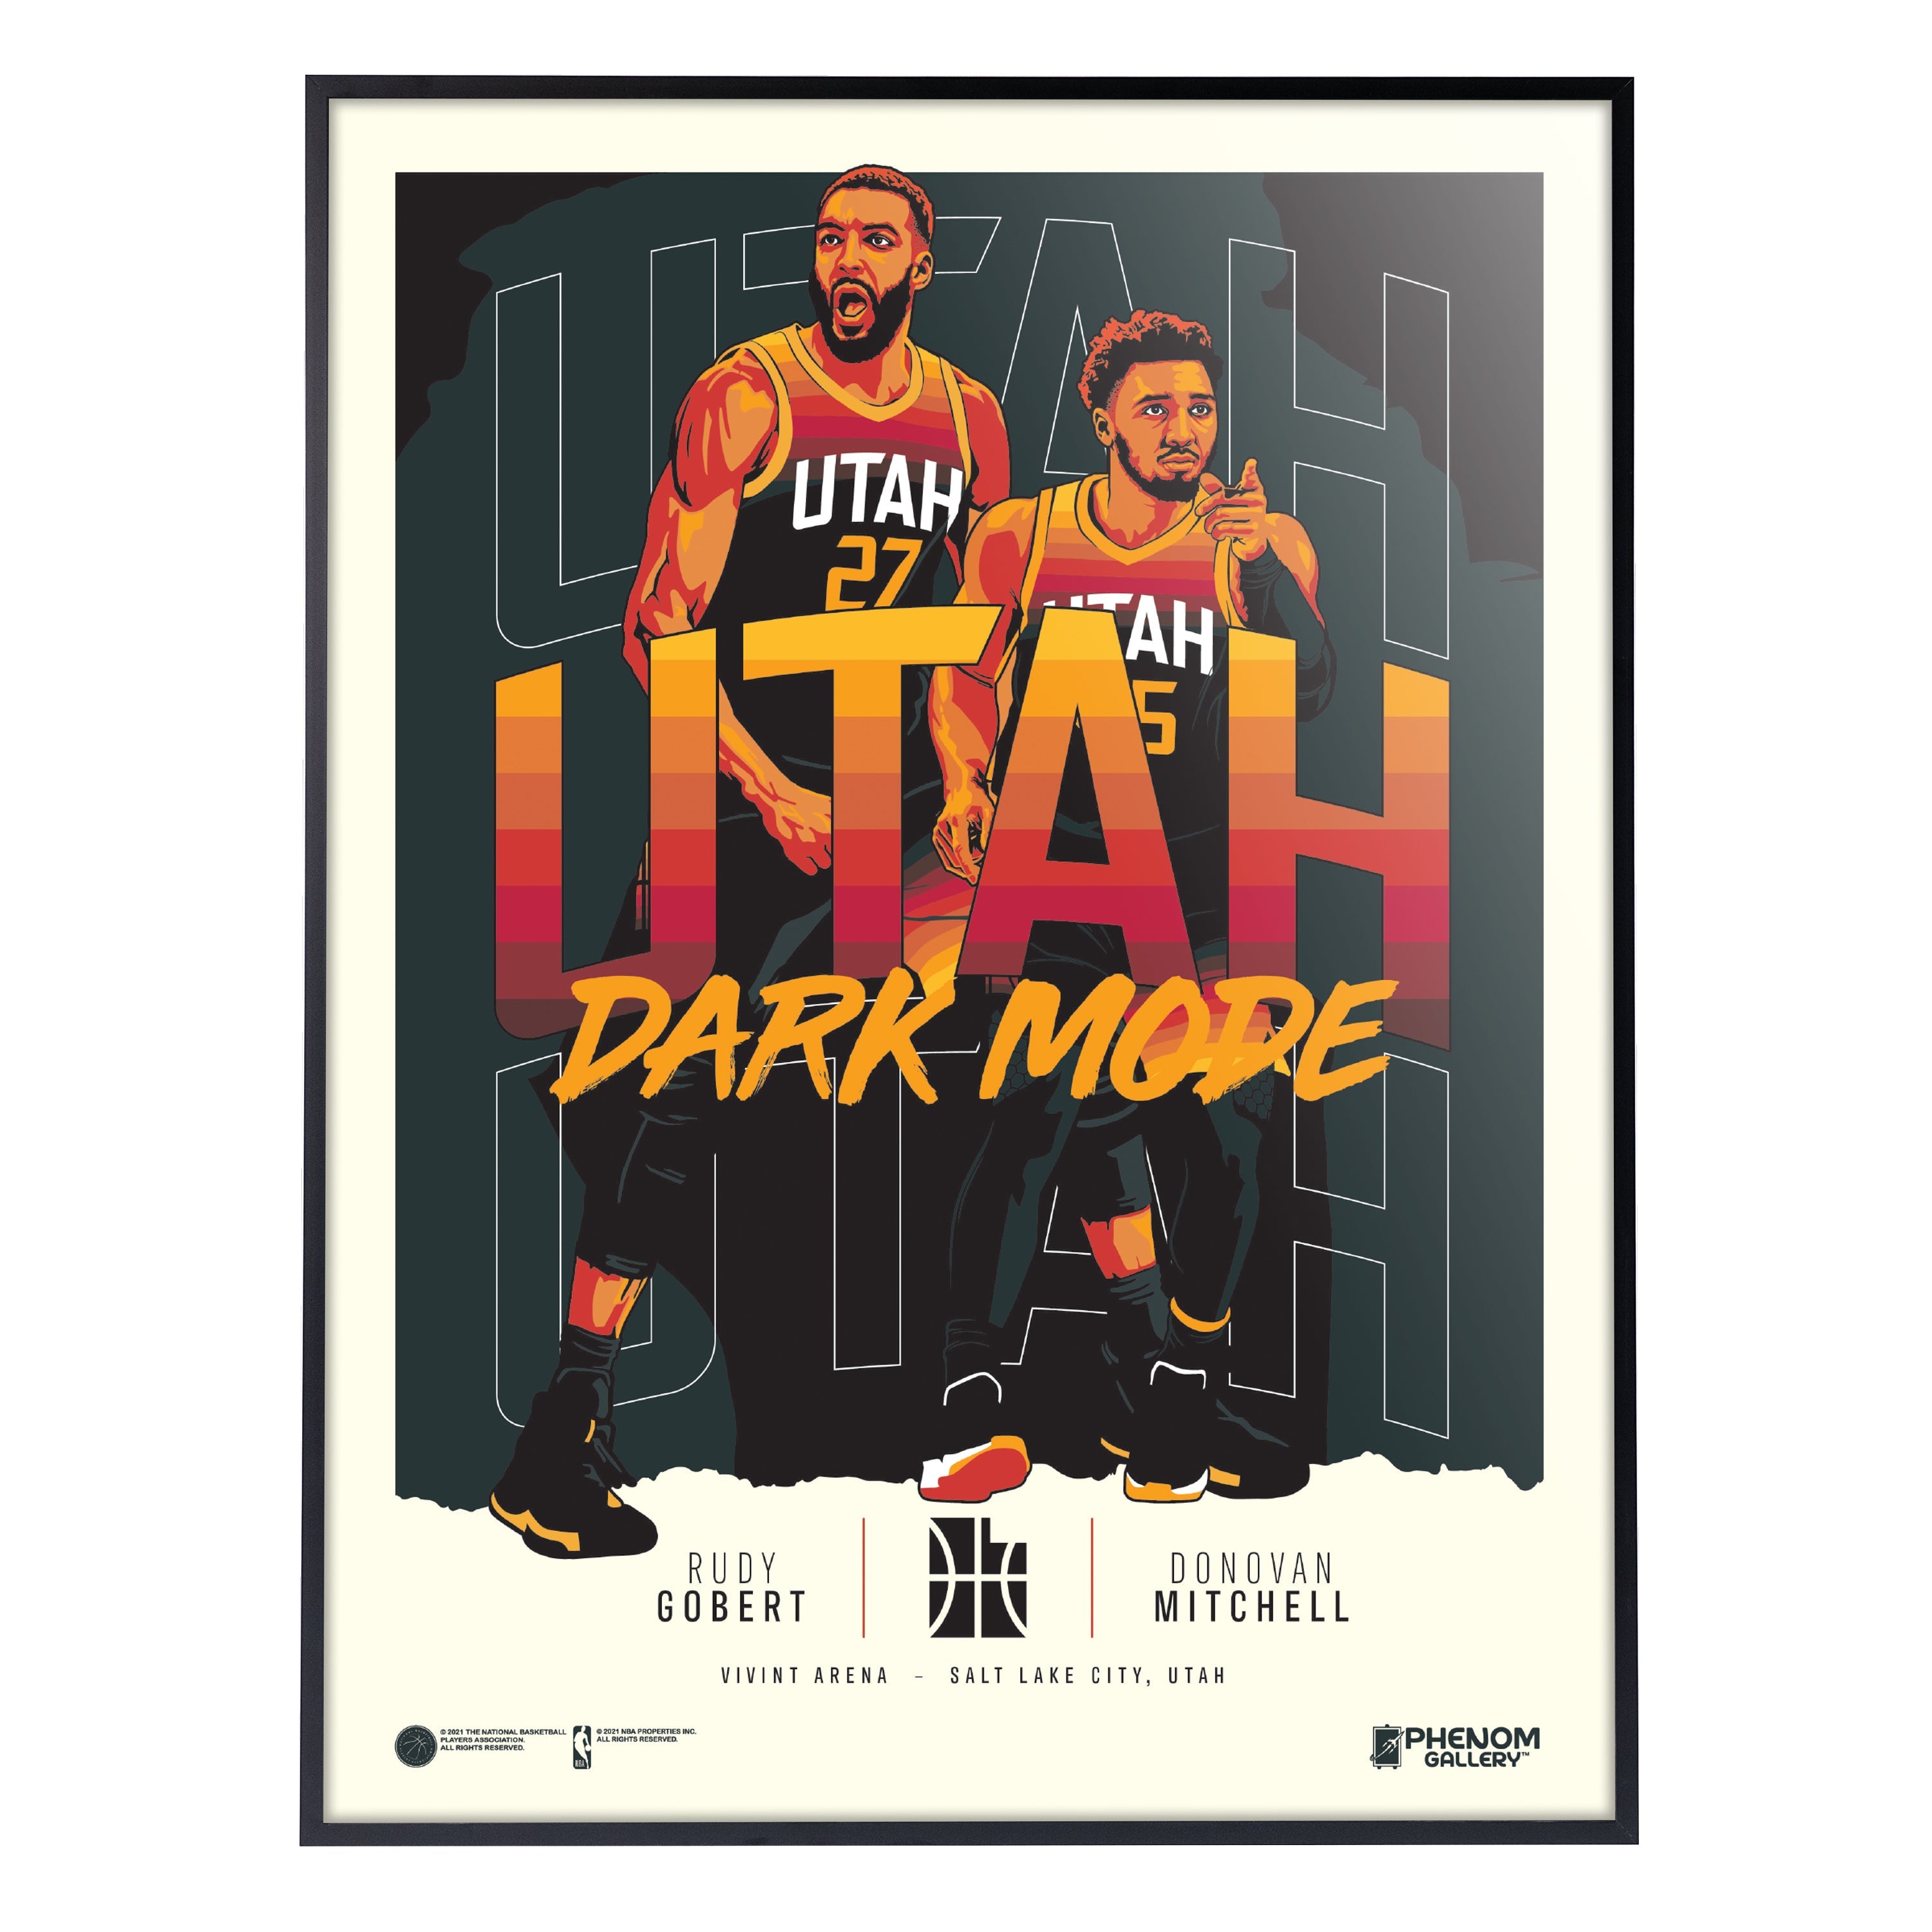 Utah Jazz set to slay the shoe universe in 2018-19